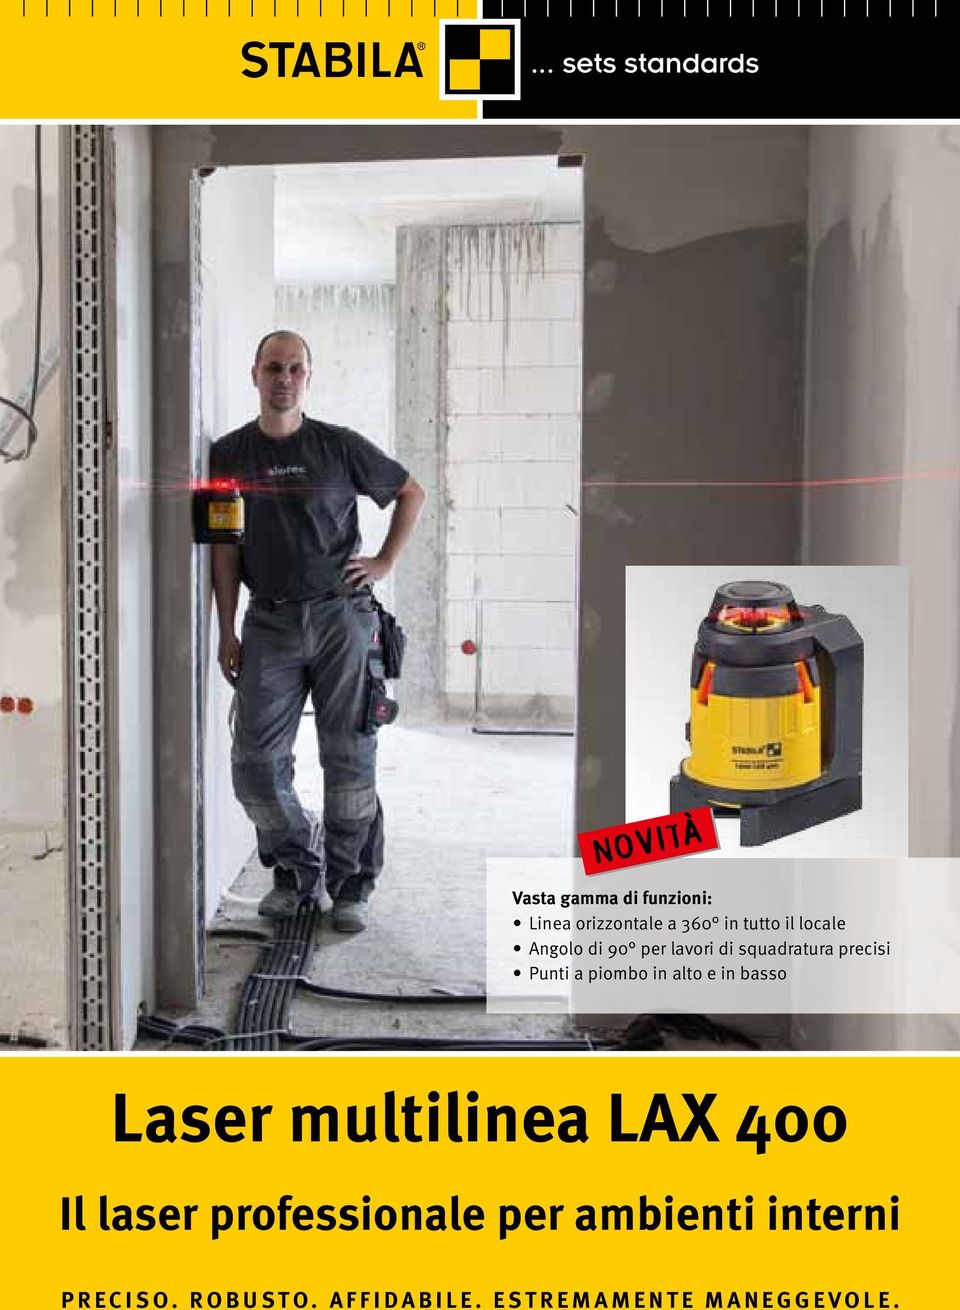 piombo in alto e in basso Laser multilinea LAX 400 Il laser professionale